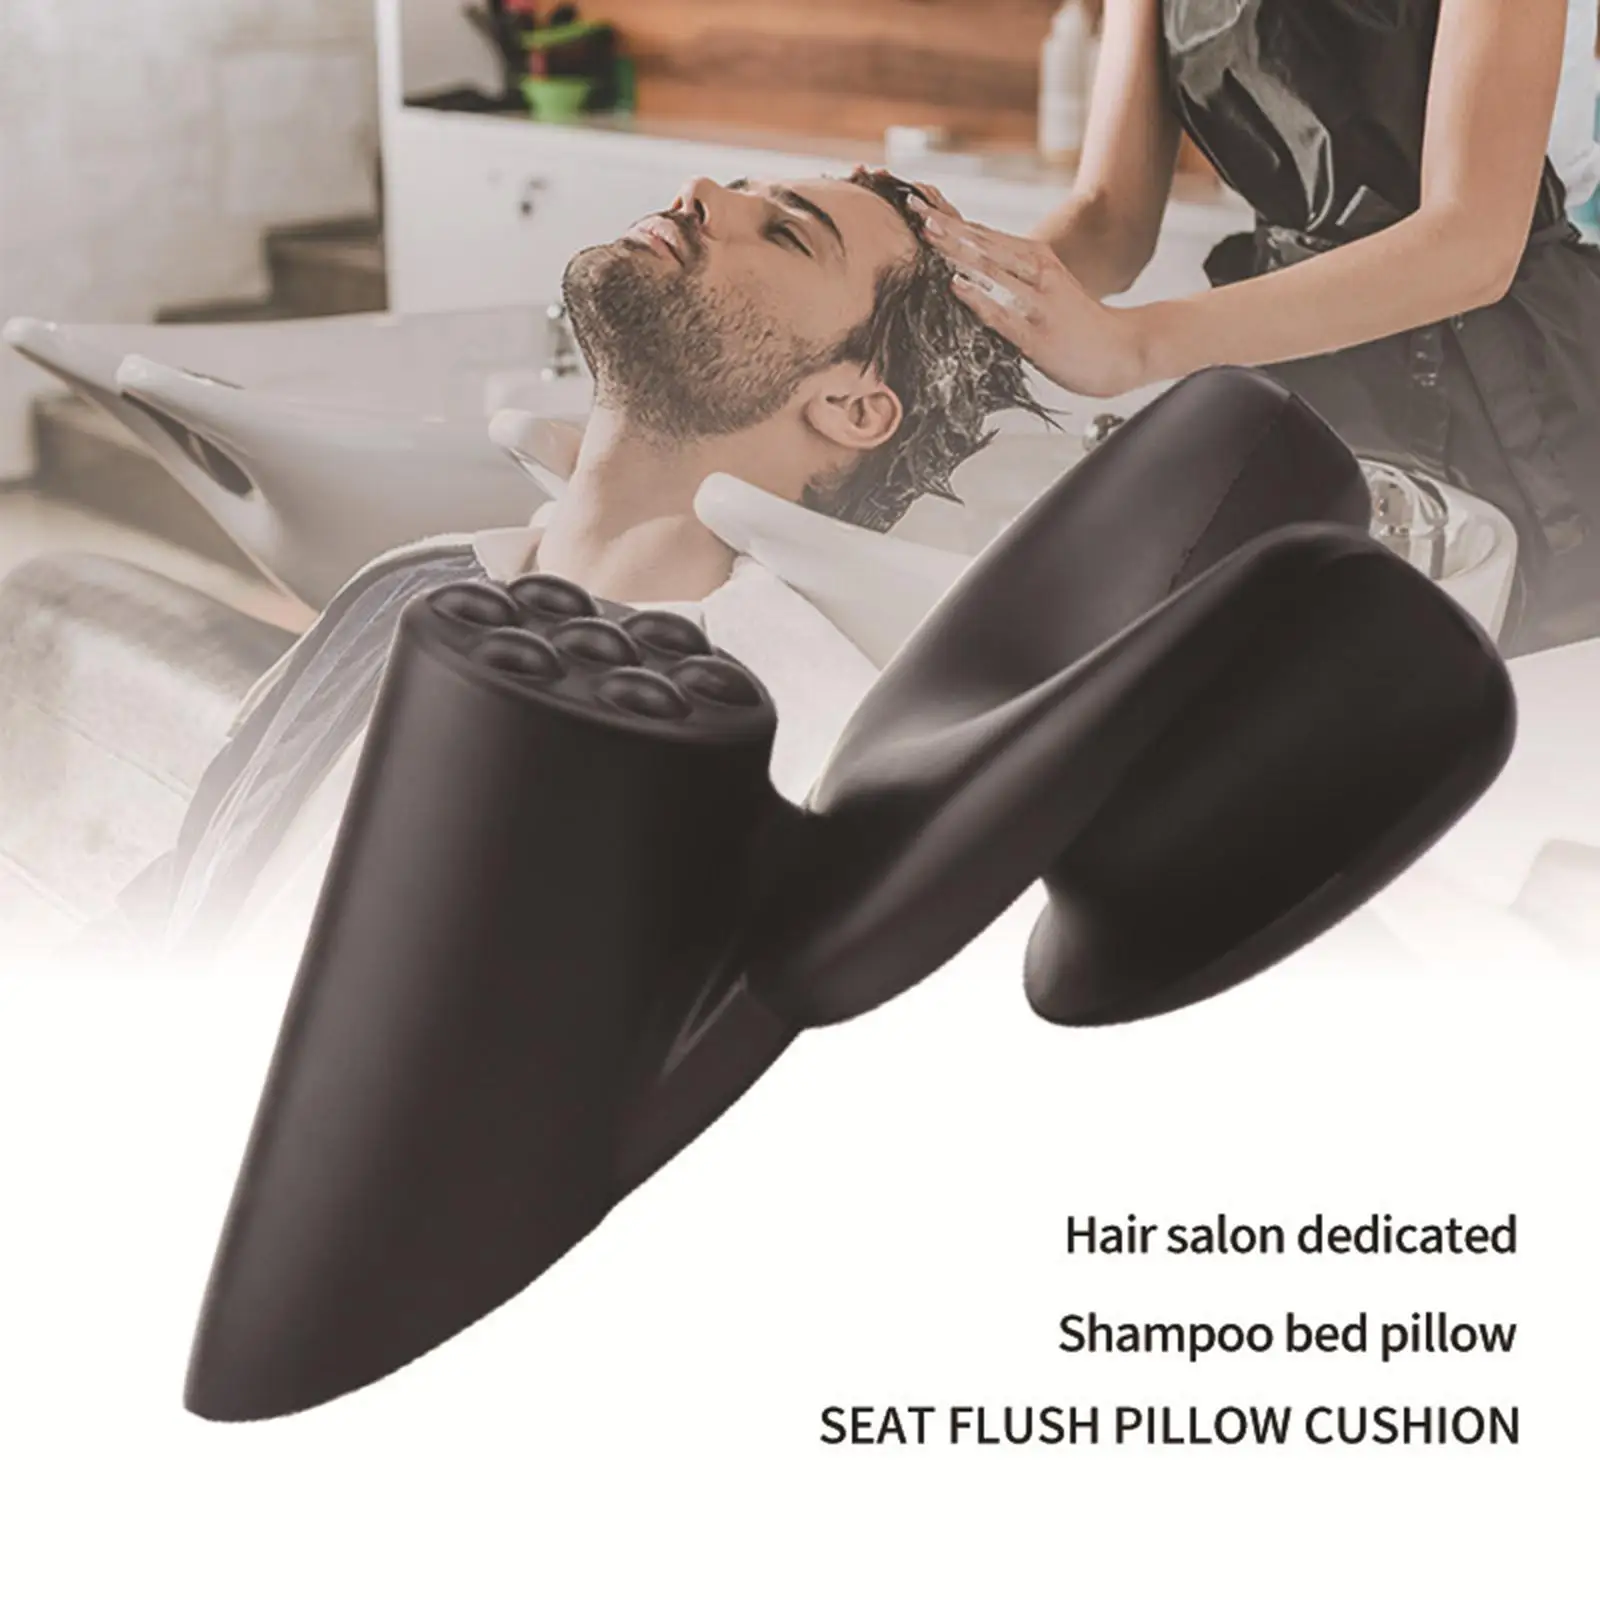 Salon Sink Neck Cushion Non Slip Hair Salon Washing Sink Basin Tool Shampoo Bed  Hair Washing  for Salon Accessories